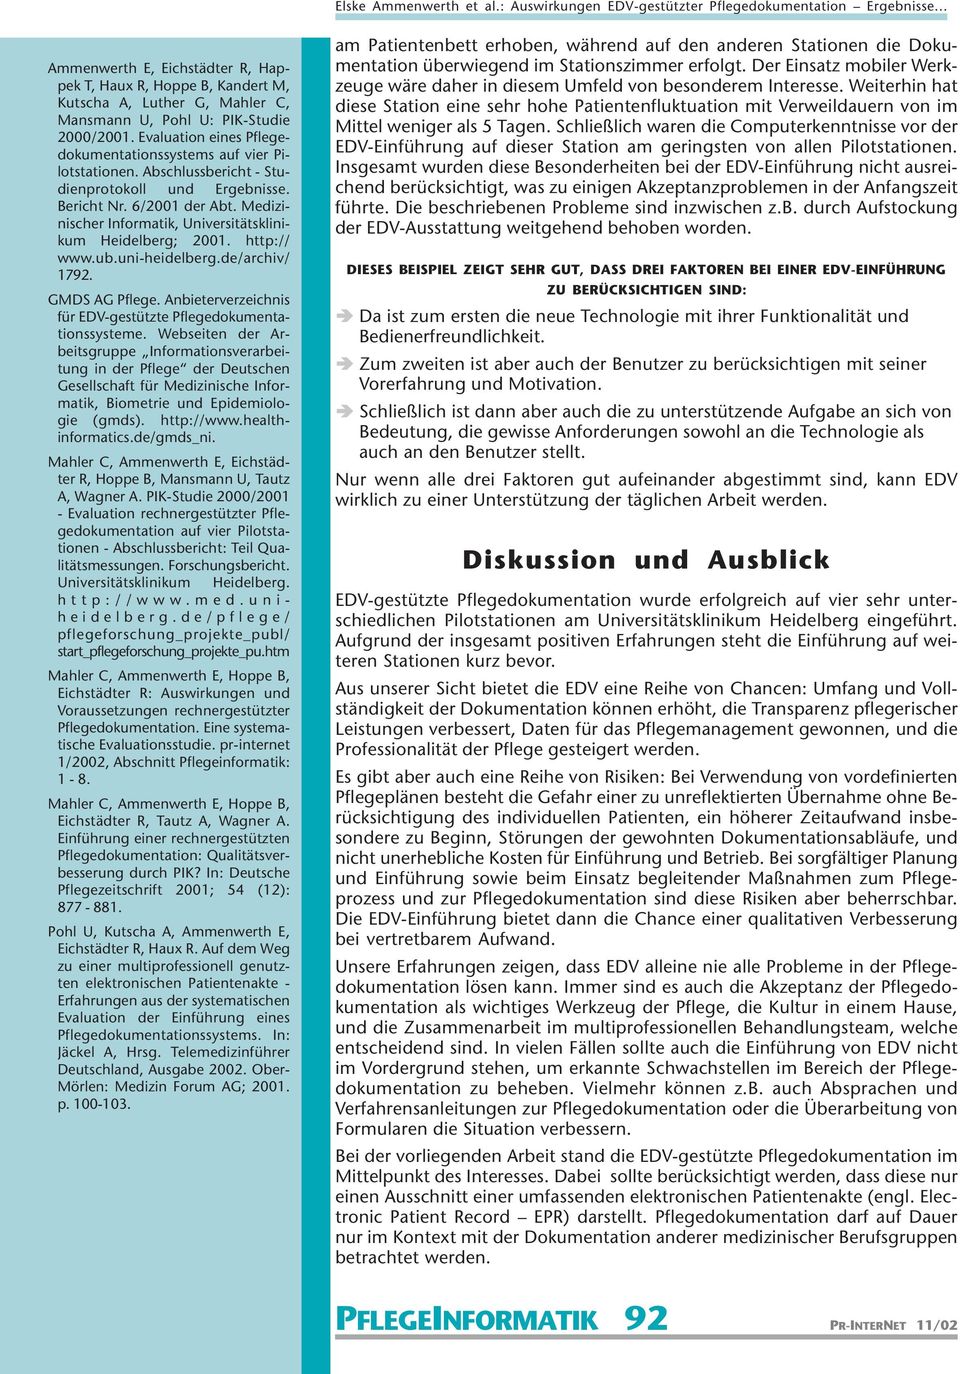 Medizinischer Informatik, Universitätsklinikum Heidelberg; 2001. http:// www.ub.uni-heidelberg.de/archiv/ 1792. GMDS AG Pflege. Anbieterverzeichnis für EDV-gestützte Pflegedokumentationssysteme.